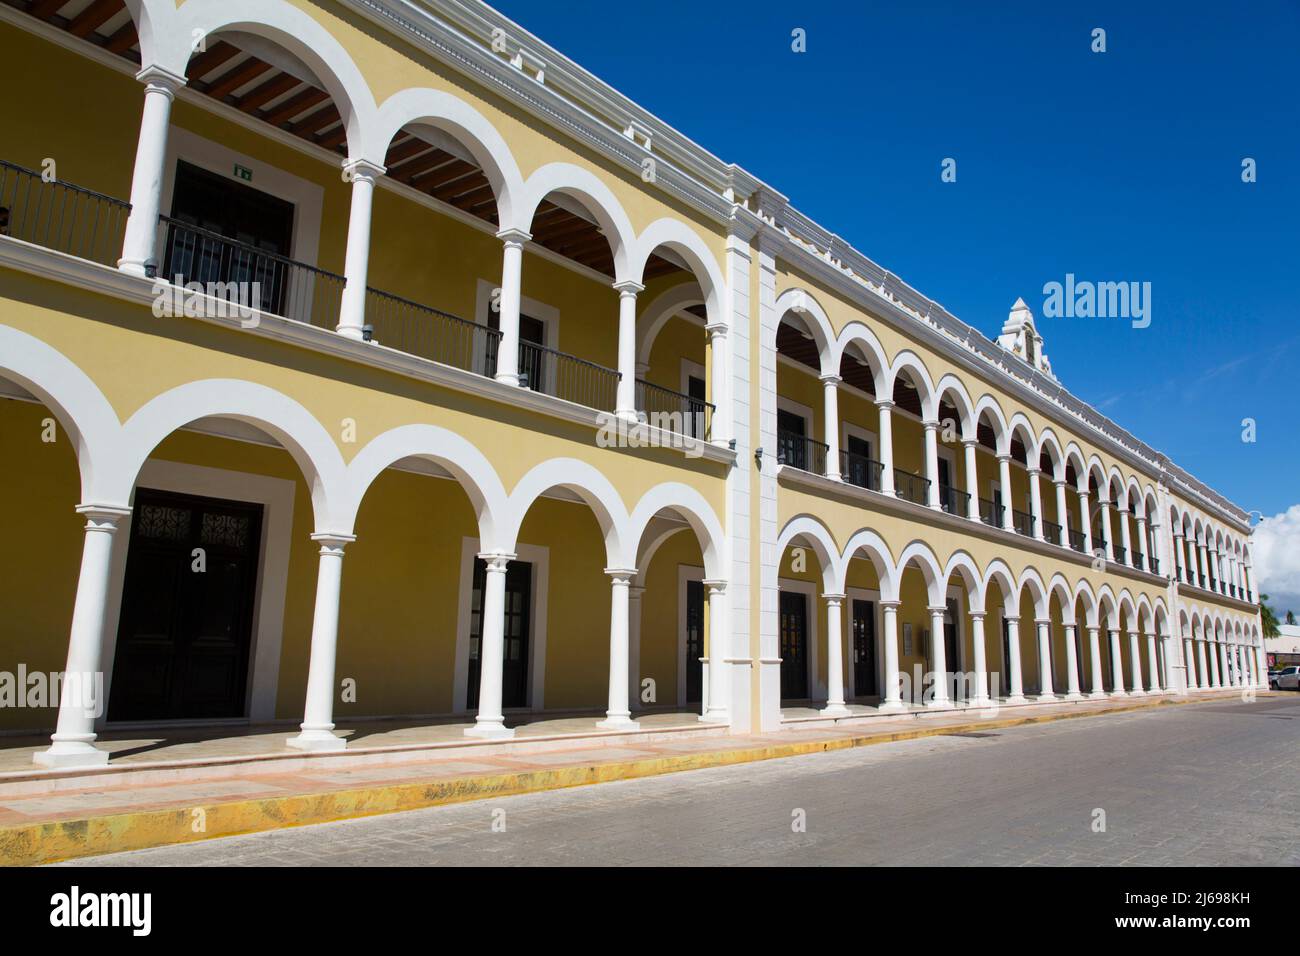 Museo del Palacio del Gobernador, Casco Antiguo, Patrimonio de la Humanidad de la UNESCO, San Francisco de Campeche, Estado de Campeche, México Foto de stock